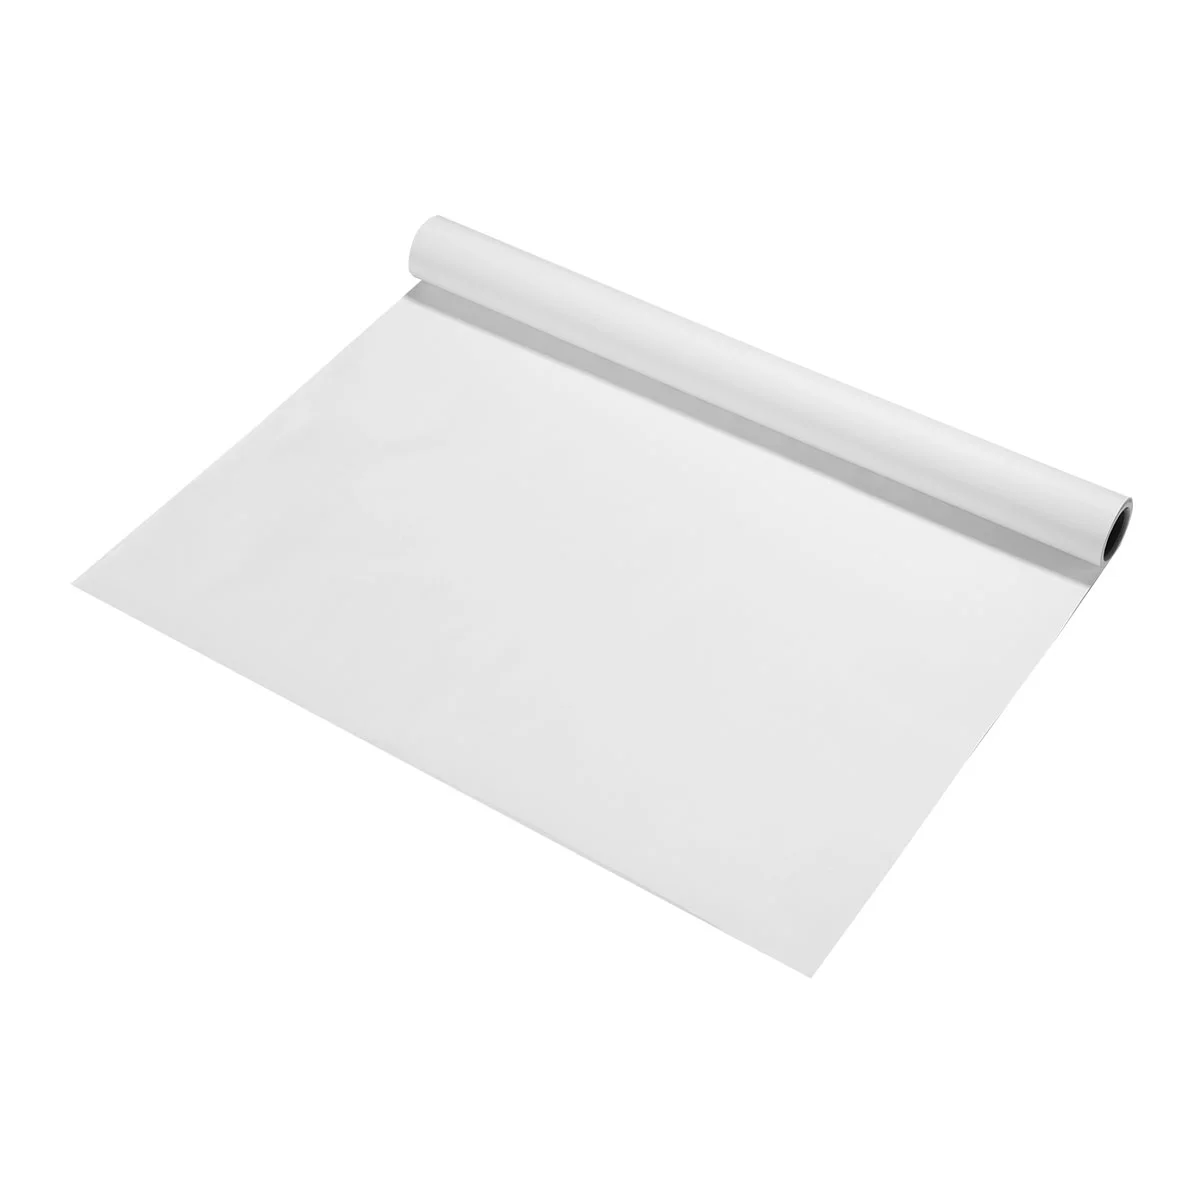 

Бумага для рисования Toyota, бумажная бумага для рукоделия, рулон белой упаковочной бумаги для рисования (белая), сульфит